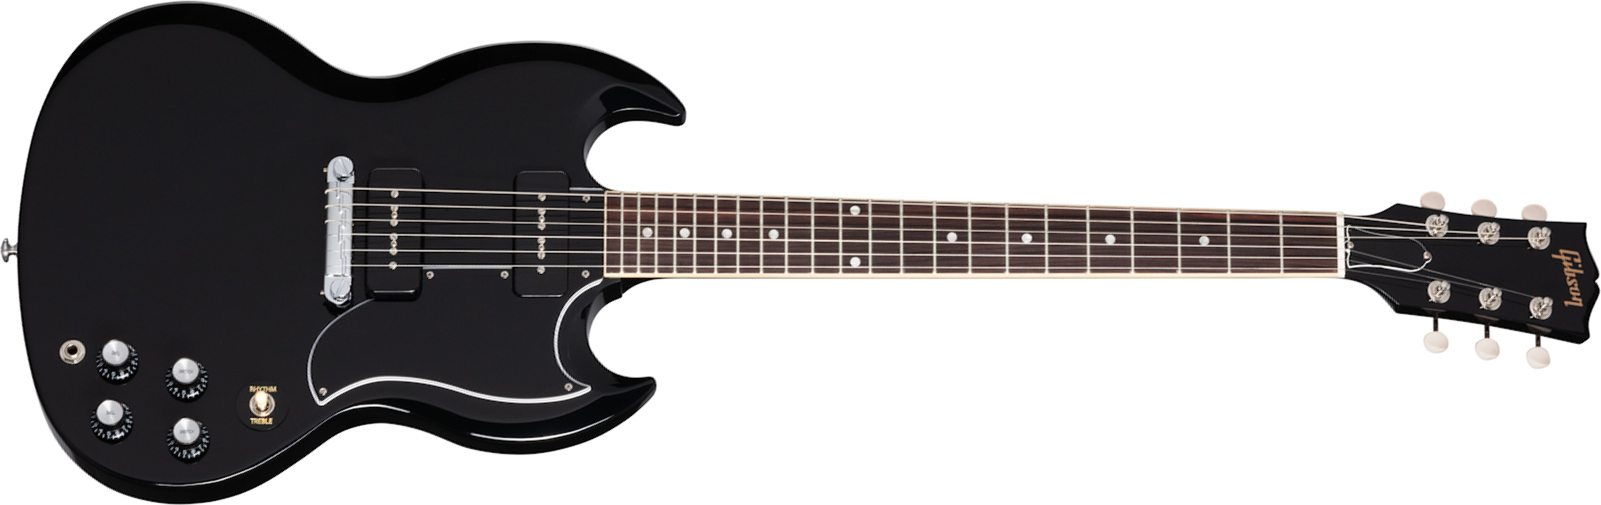 Gibson Sg Special Original 2021 2p90 Ht Rw - Ebony - Guitarra eléctrica de doble corte - Main picture